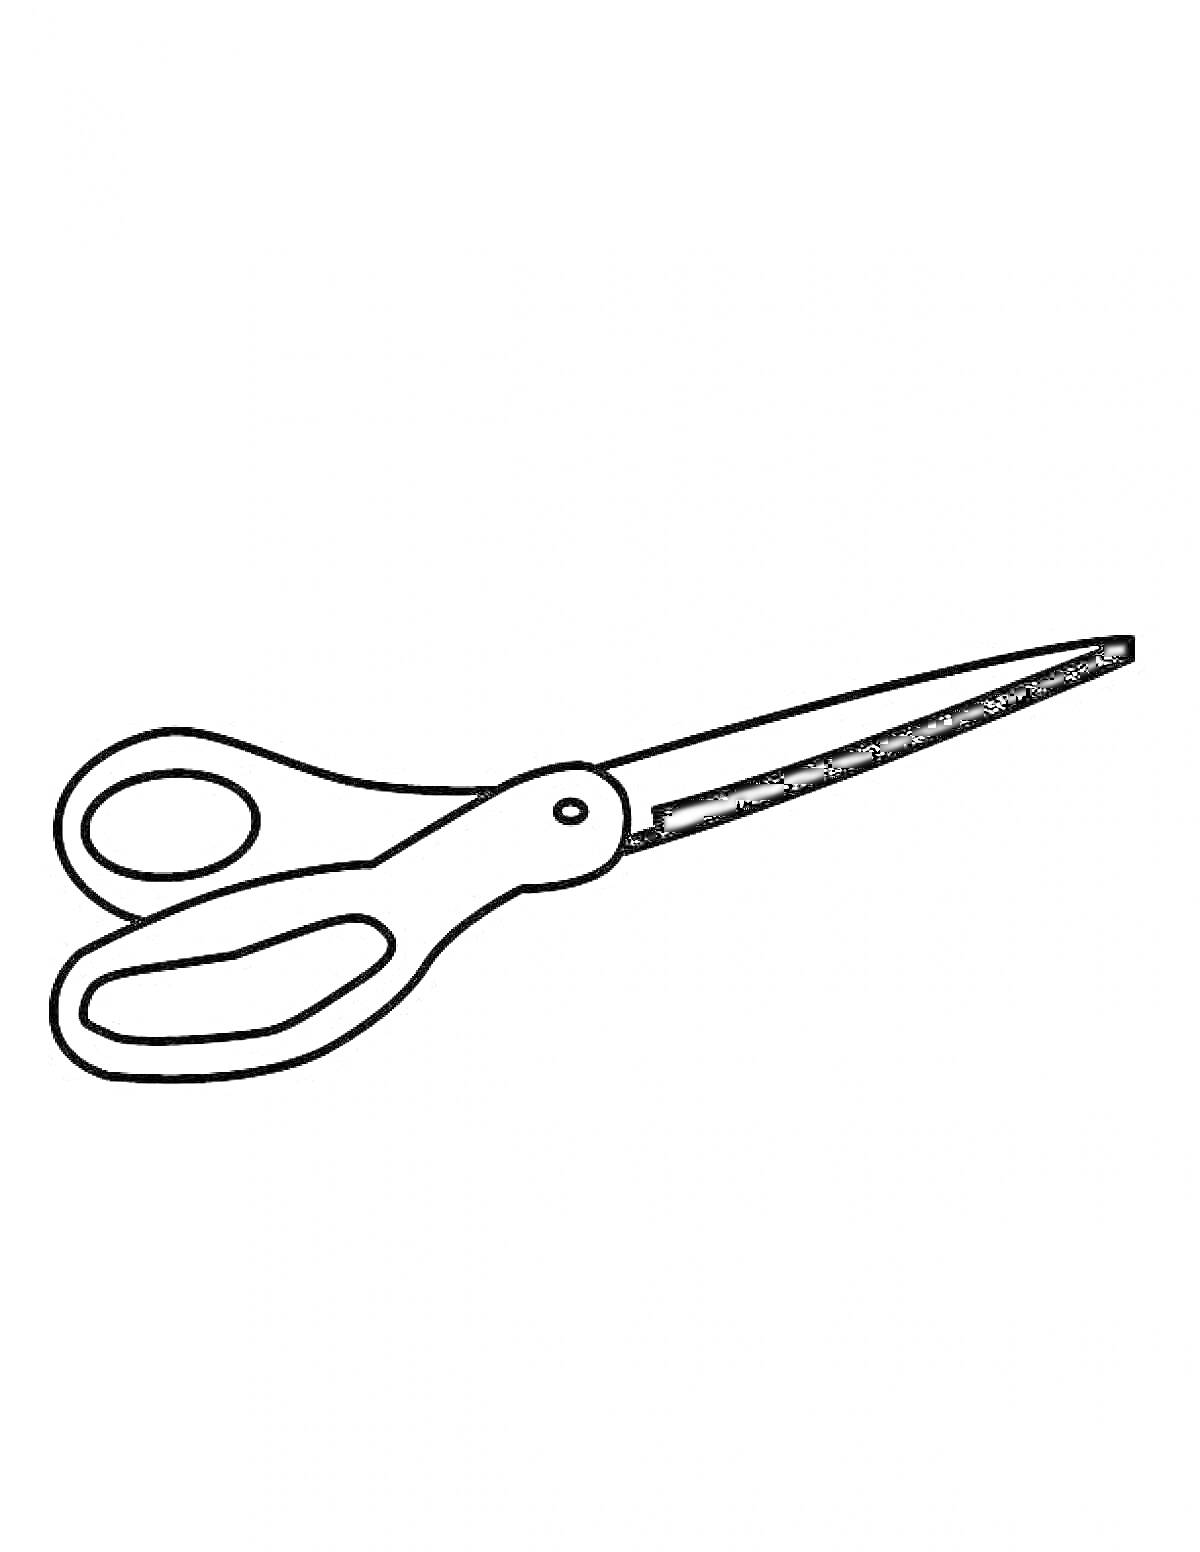 Раскраска Ножницы с двумя закругленными рукоятками и острыми лезвиями